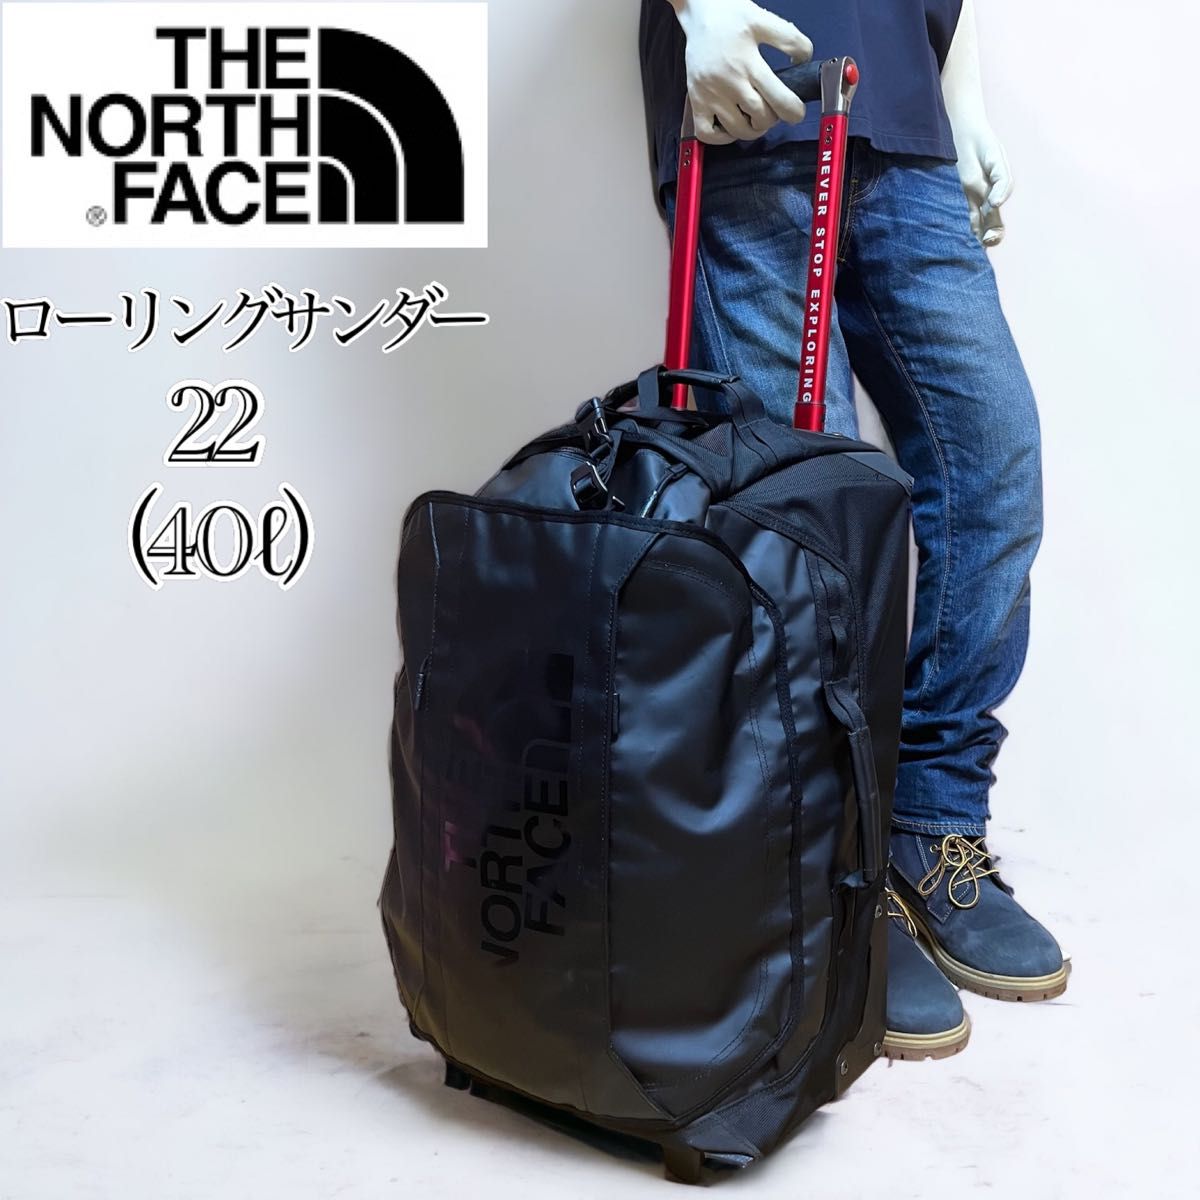 【希少レア】THE NORTH FACE ノースフェイス ローリングサンダー22 キャリーバッグ 機内持込み可能 スーツケース 黒